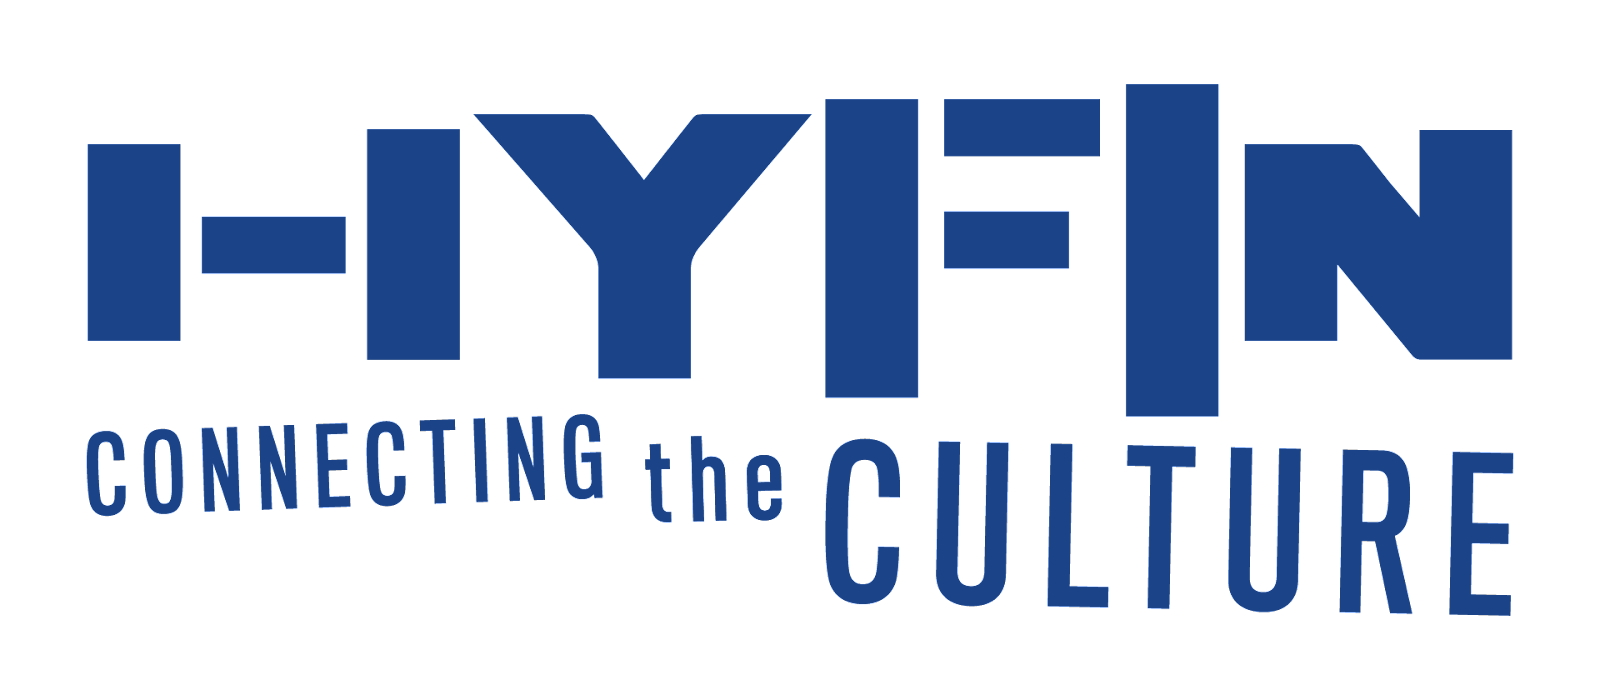 HYFIN将于11月15日举办“为繁荣的黑人企业导航金融成功”